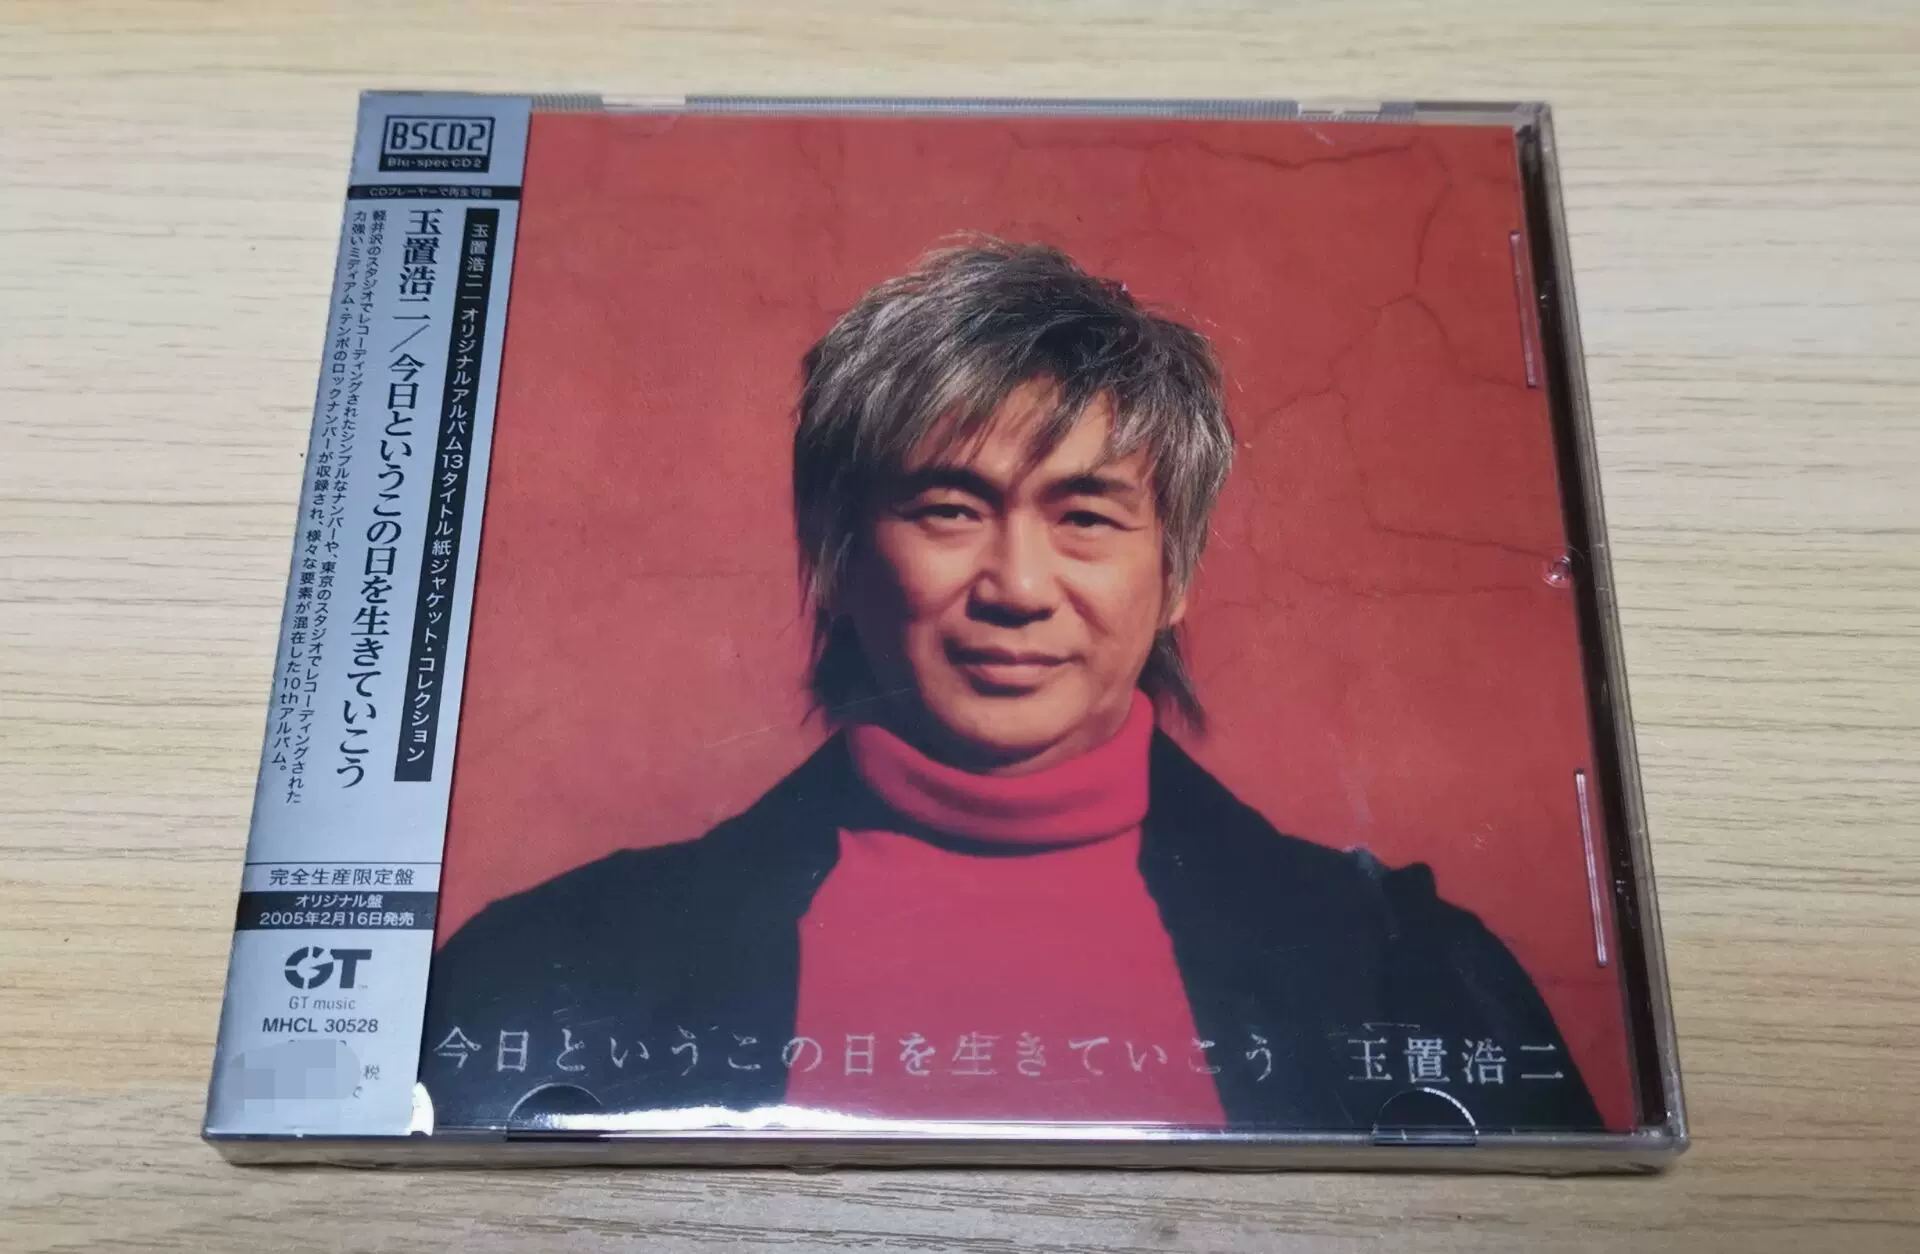 玉置浩二今日というこの日を生きていこう2019 專輯CD 現貨-Taobao